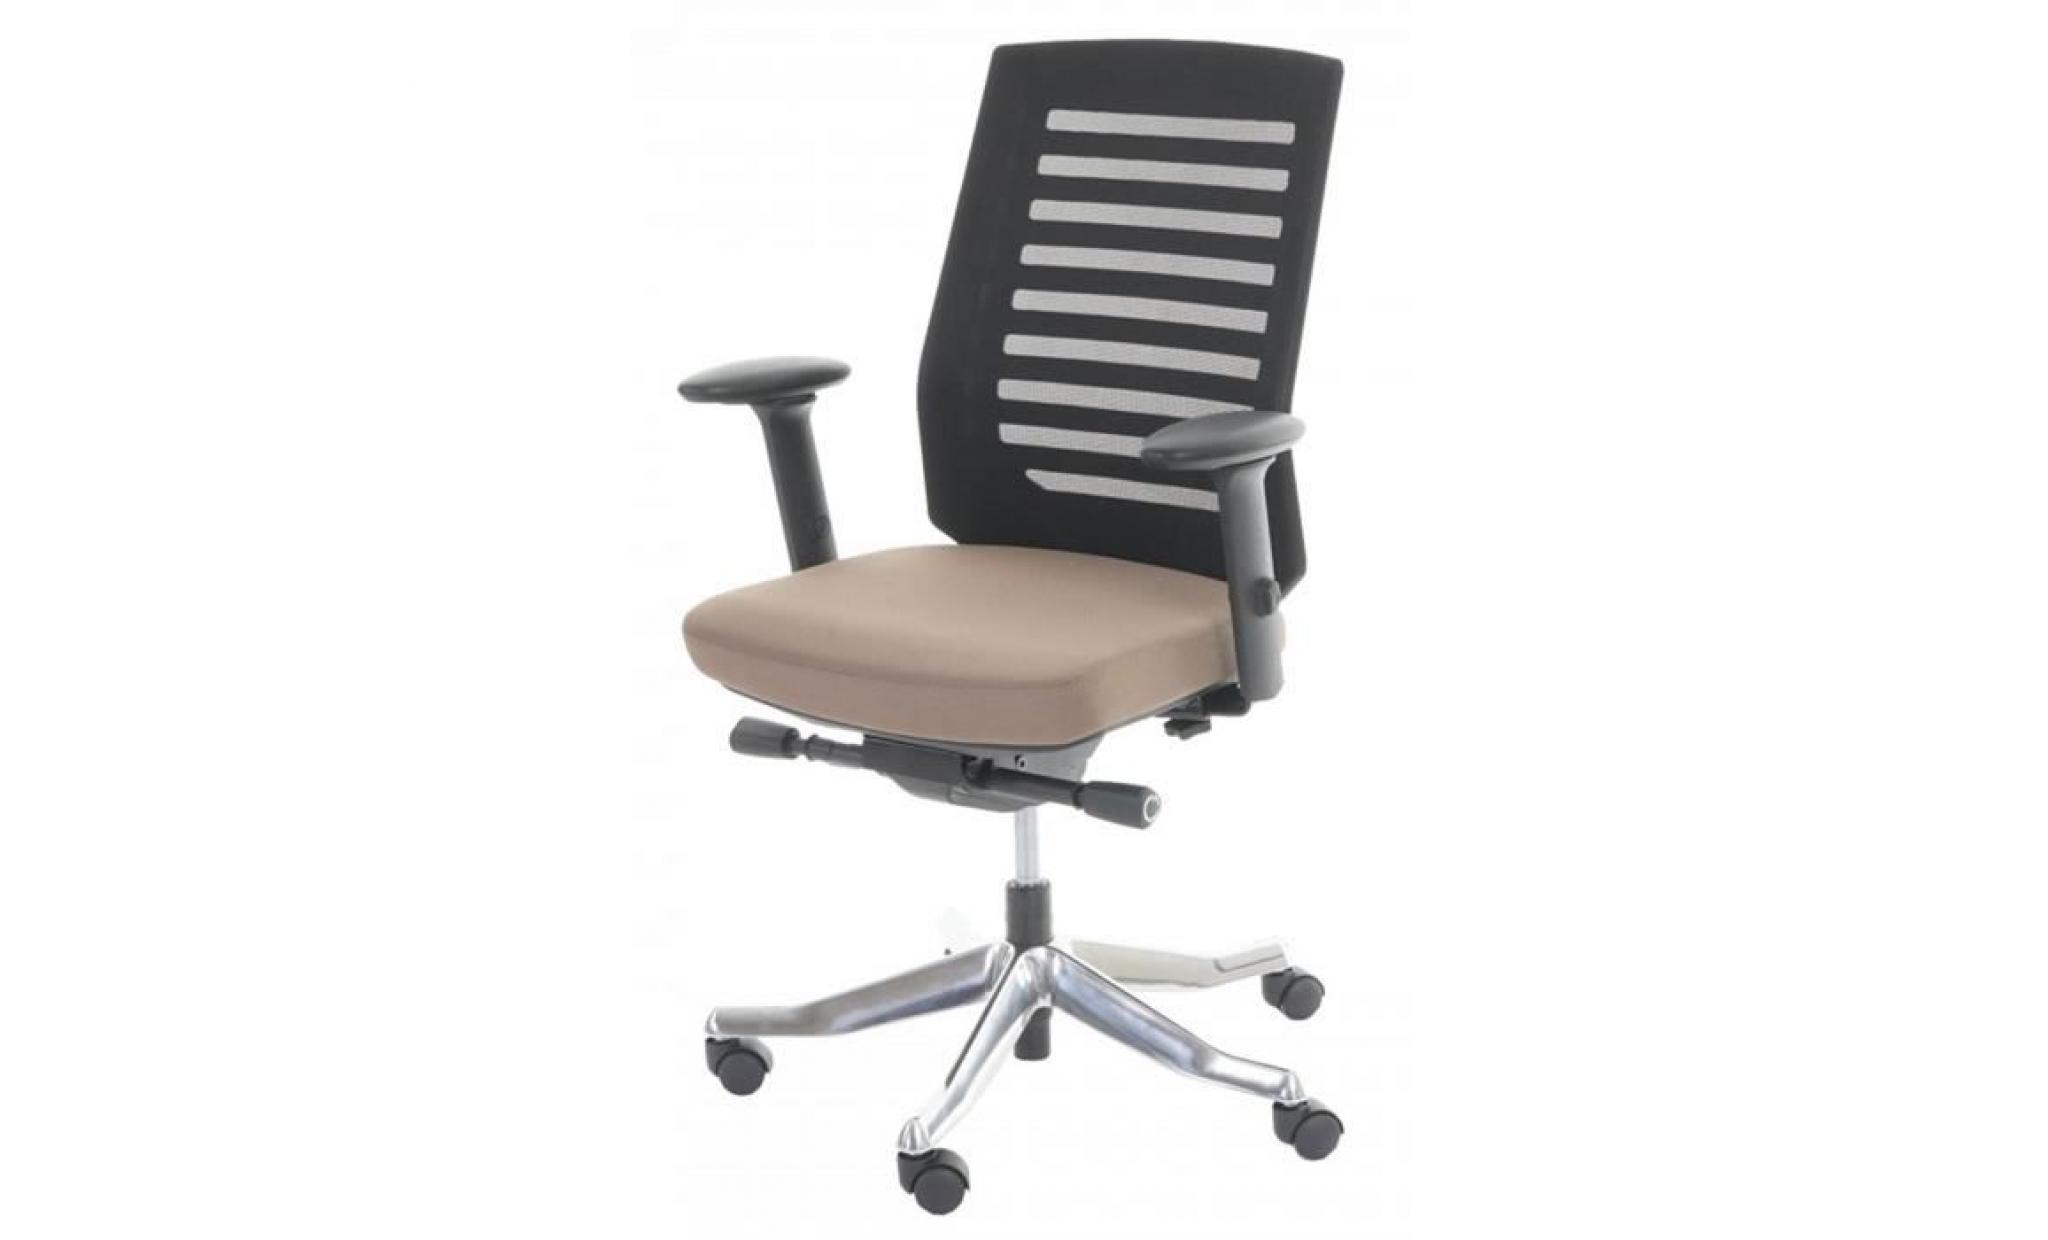 chaise de bureau coloris taupe   dim : h 98   110 x l 68 x p 70 cm